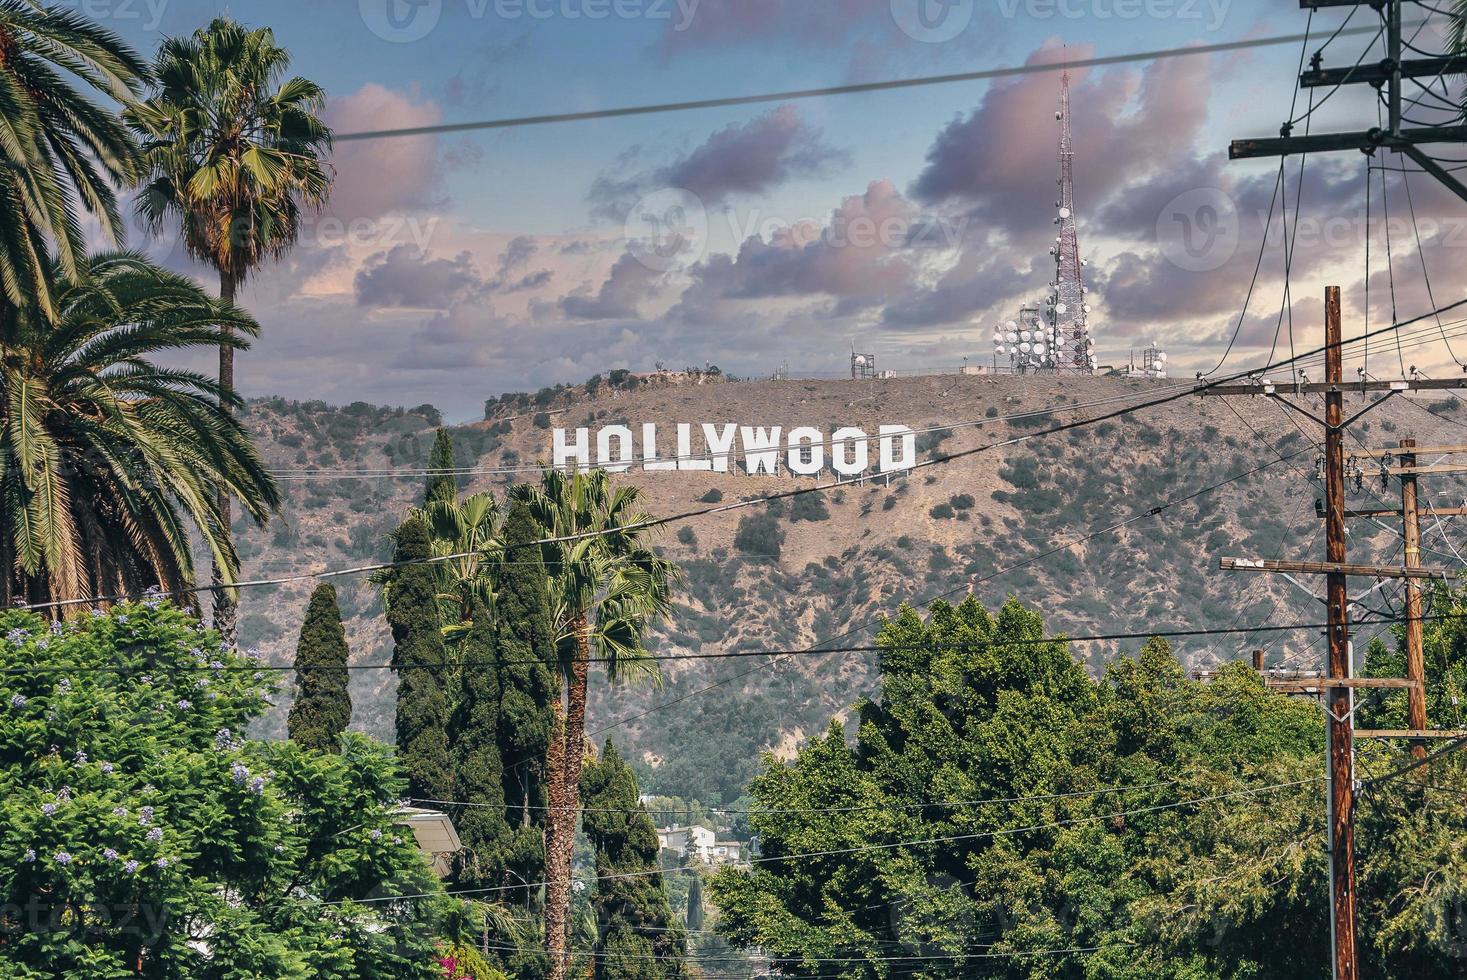 letreiro de hollywood no monte lee visto através de poste de eletricidade e árvores em dia ensolarado foto